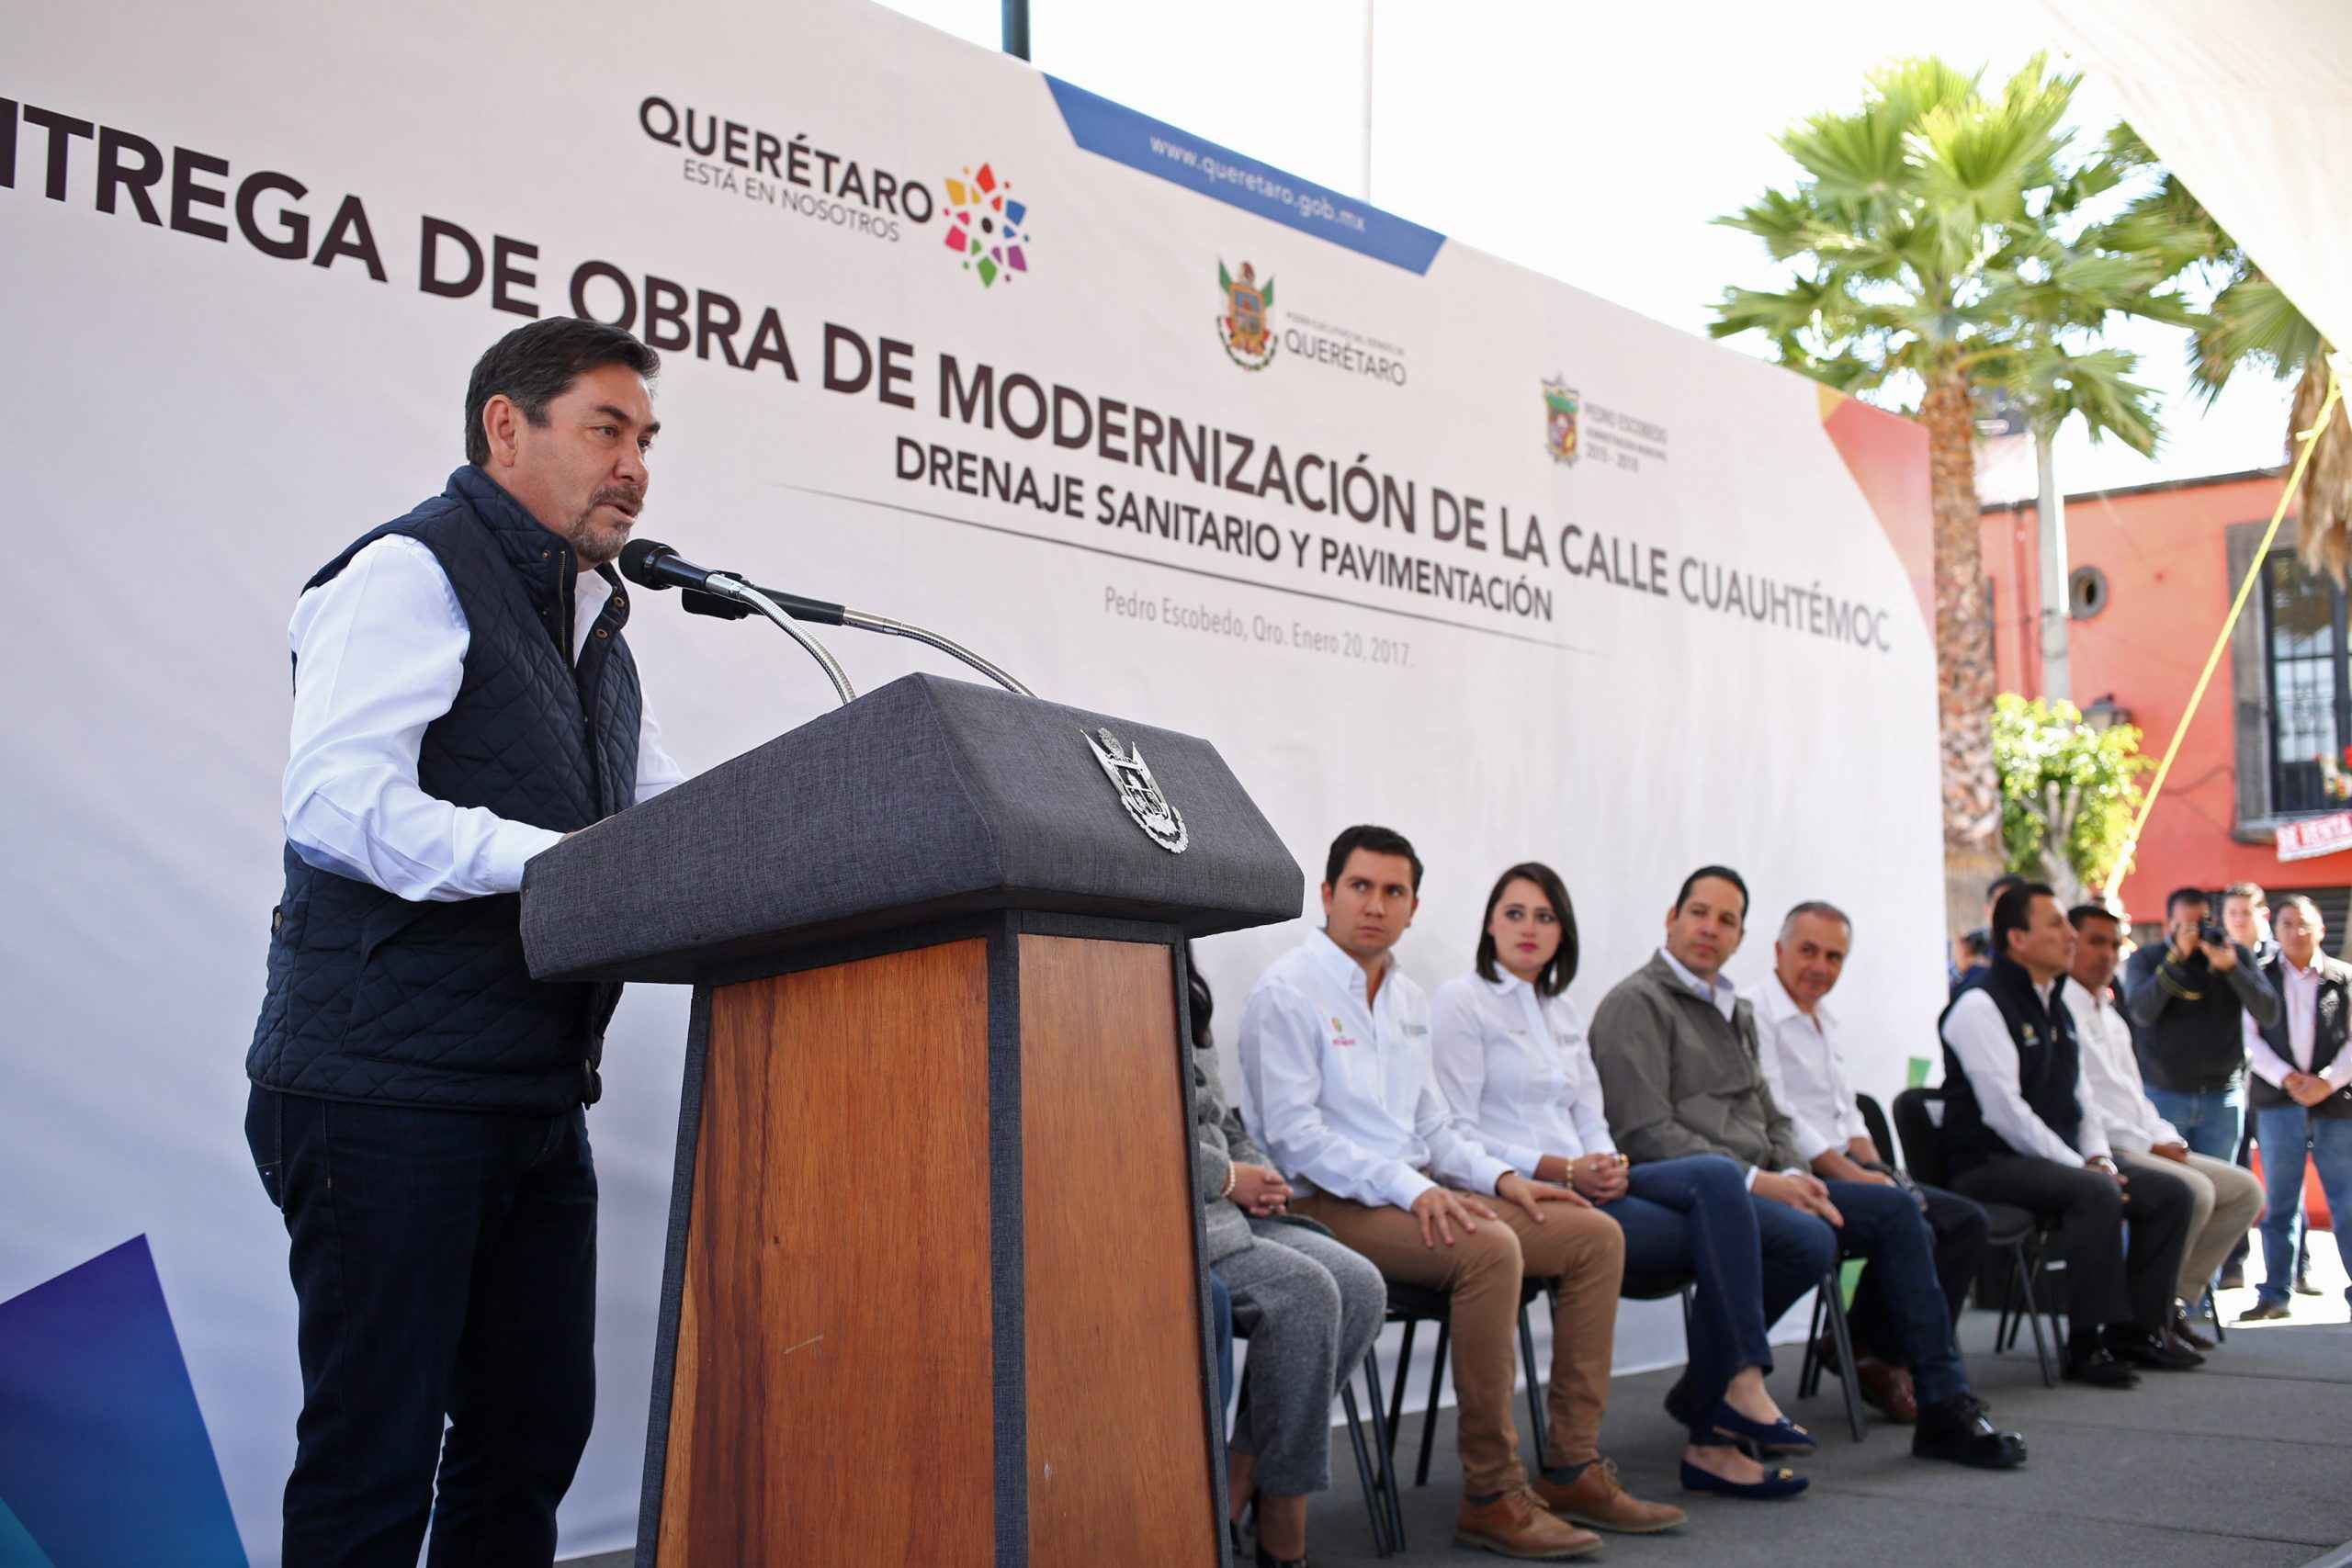 Modernizarán calle Cuauhtémoc en Querétaro - 71 273 19491 1098034441 0P0A3324 scaled